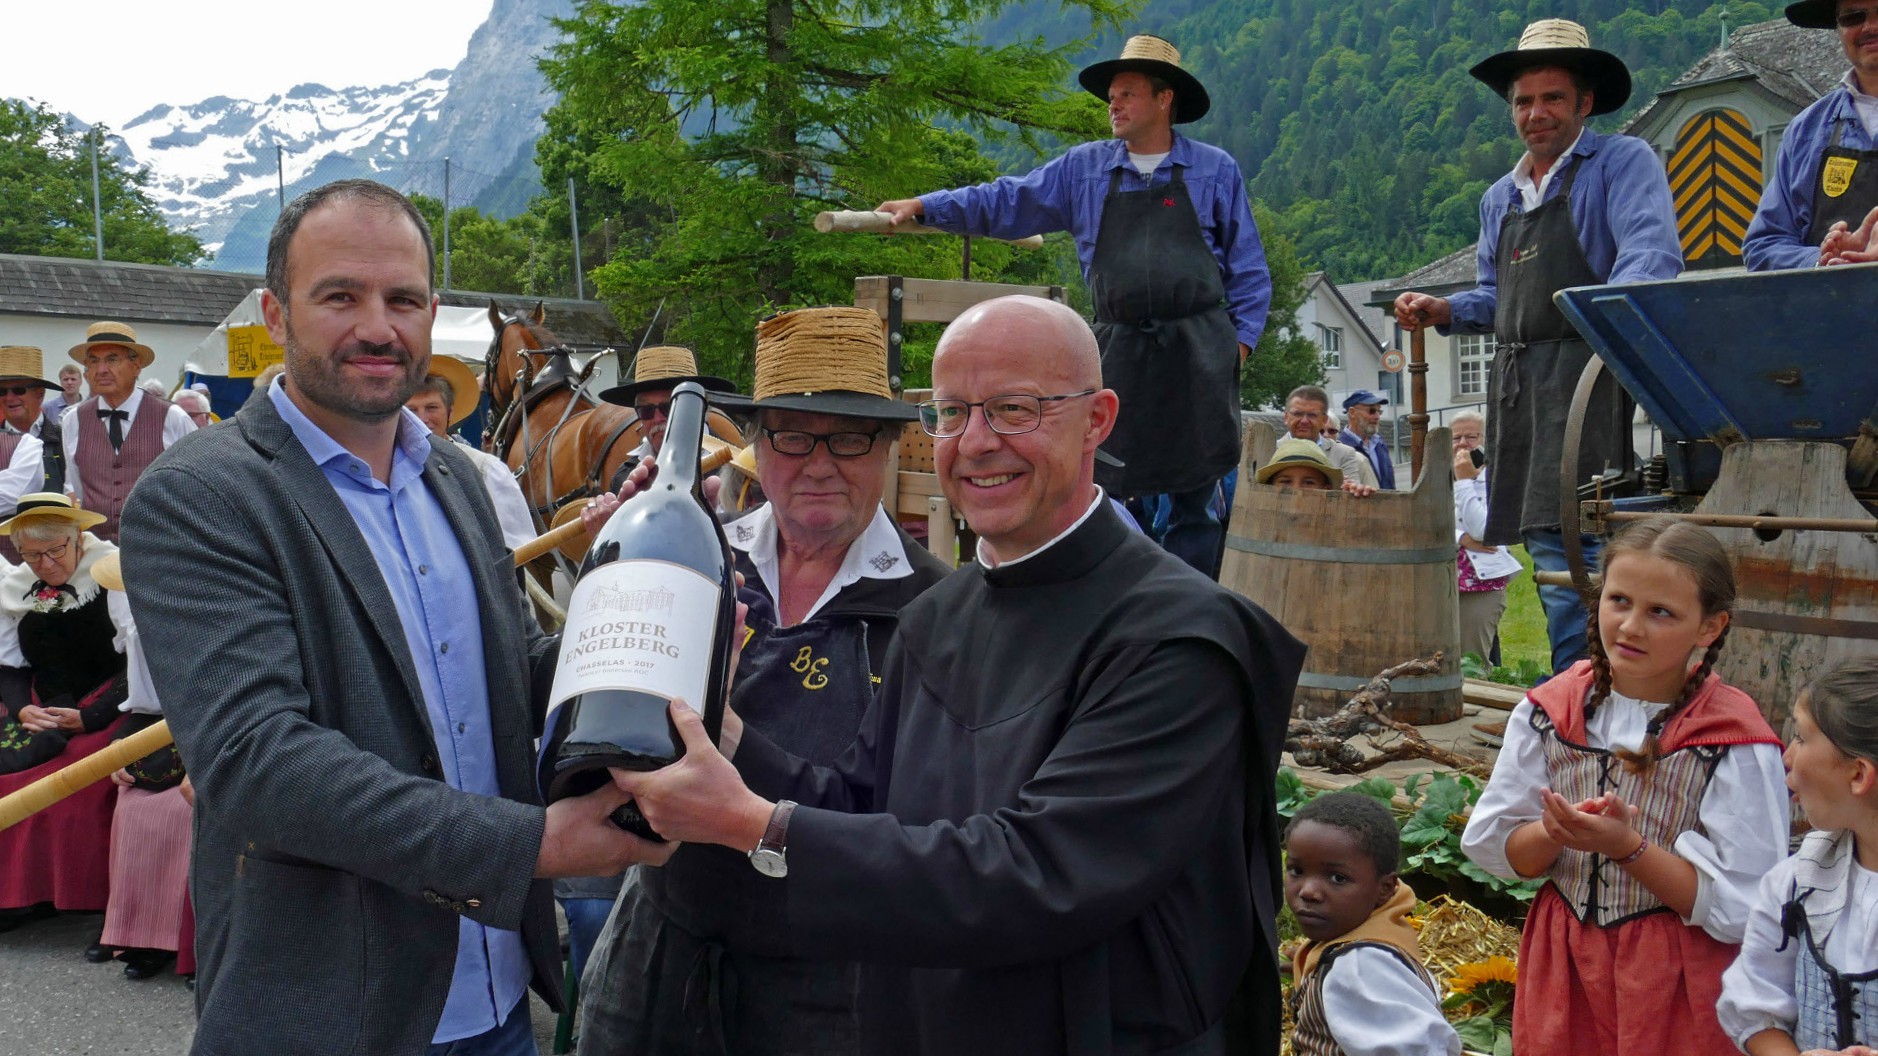 L'abbé Patrick Ledergerber et le vigneron Beat Burkhardt présentent le nouveau vin d'Engelberg (Photo: © Kloster Engelberg)